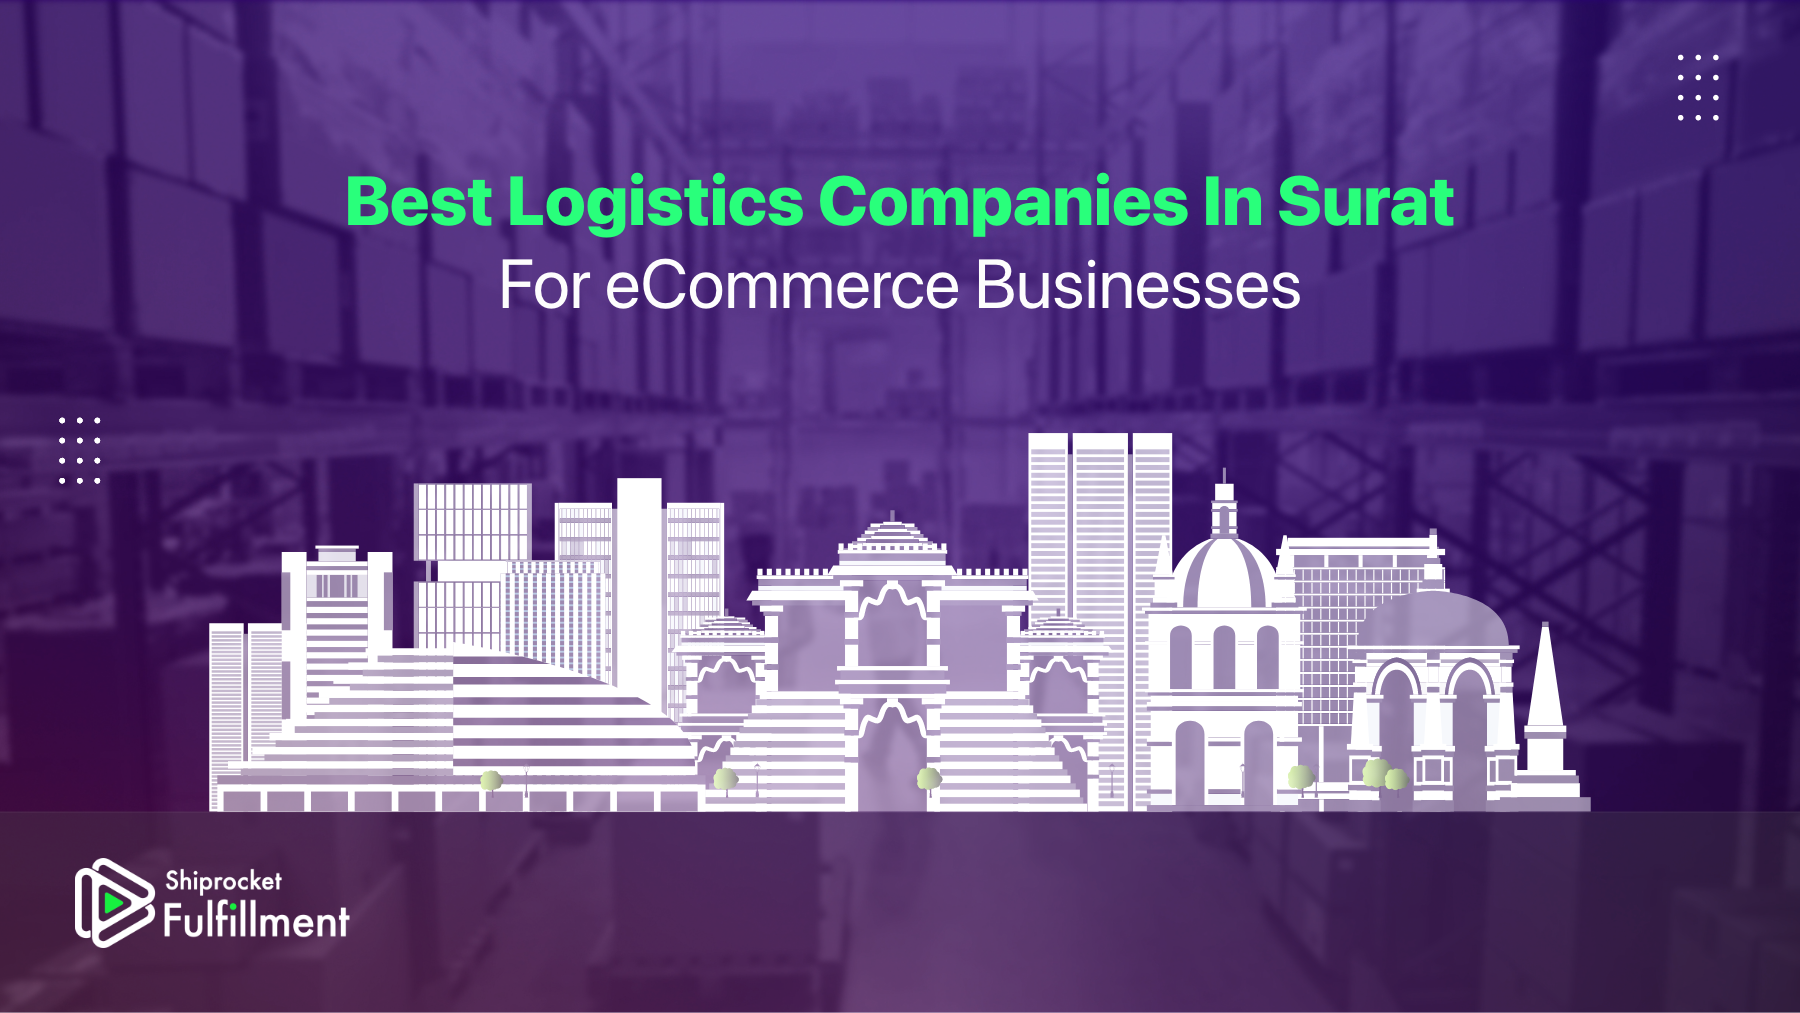 Logistics companies in Surat